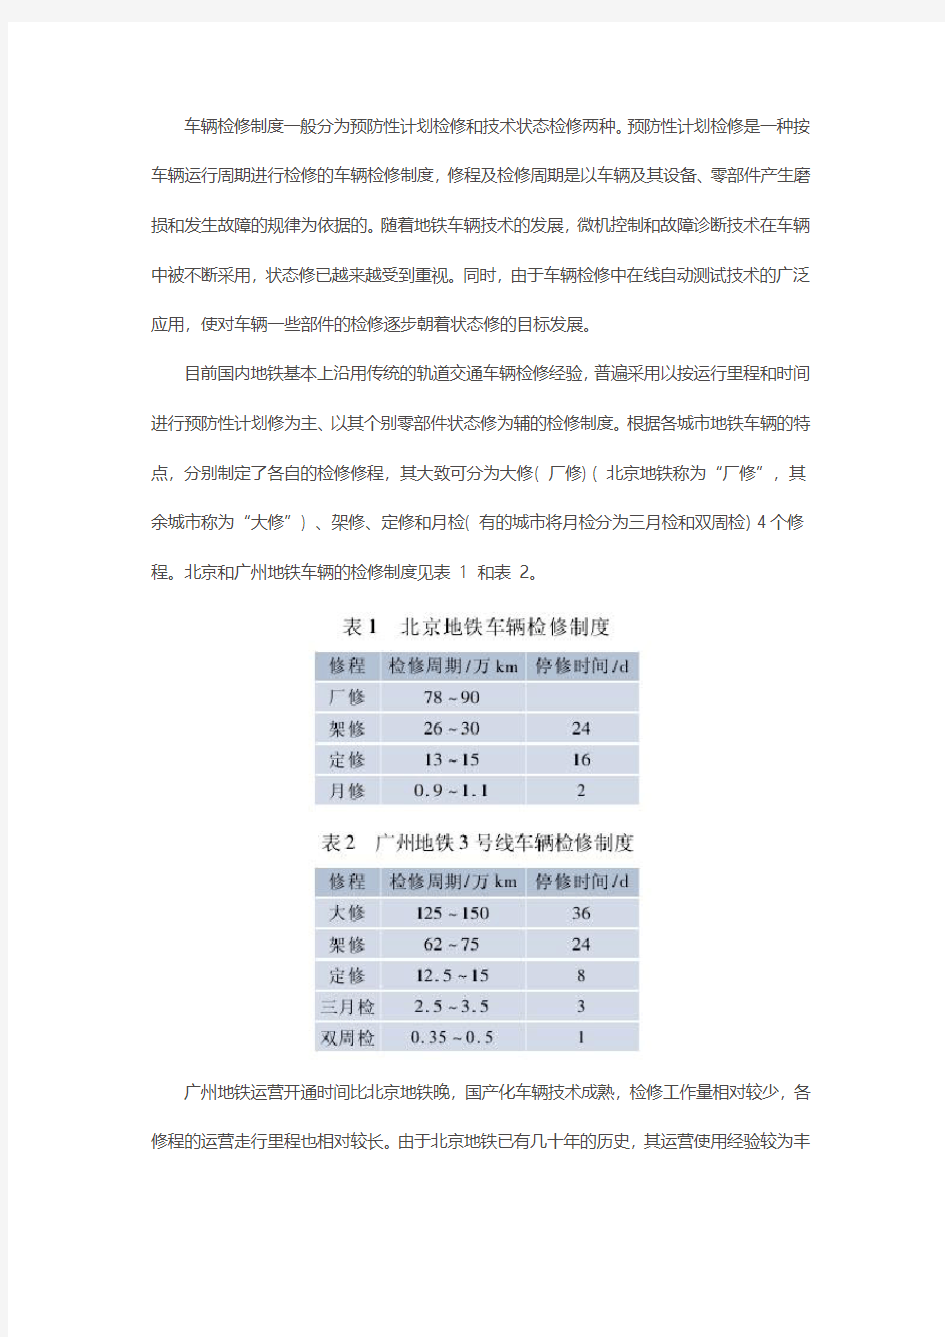 深圳地铁2号线车辆基地的功能定位